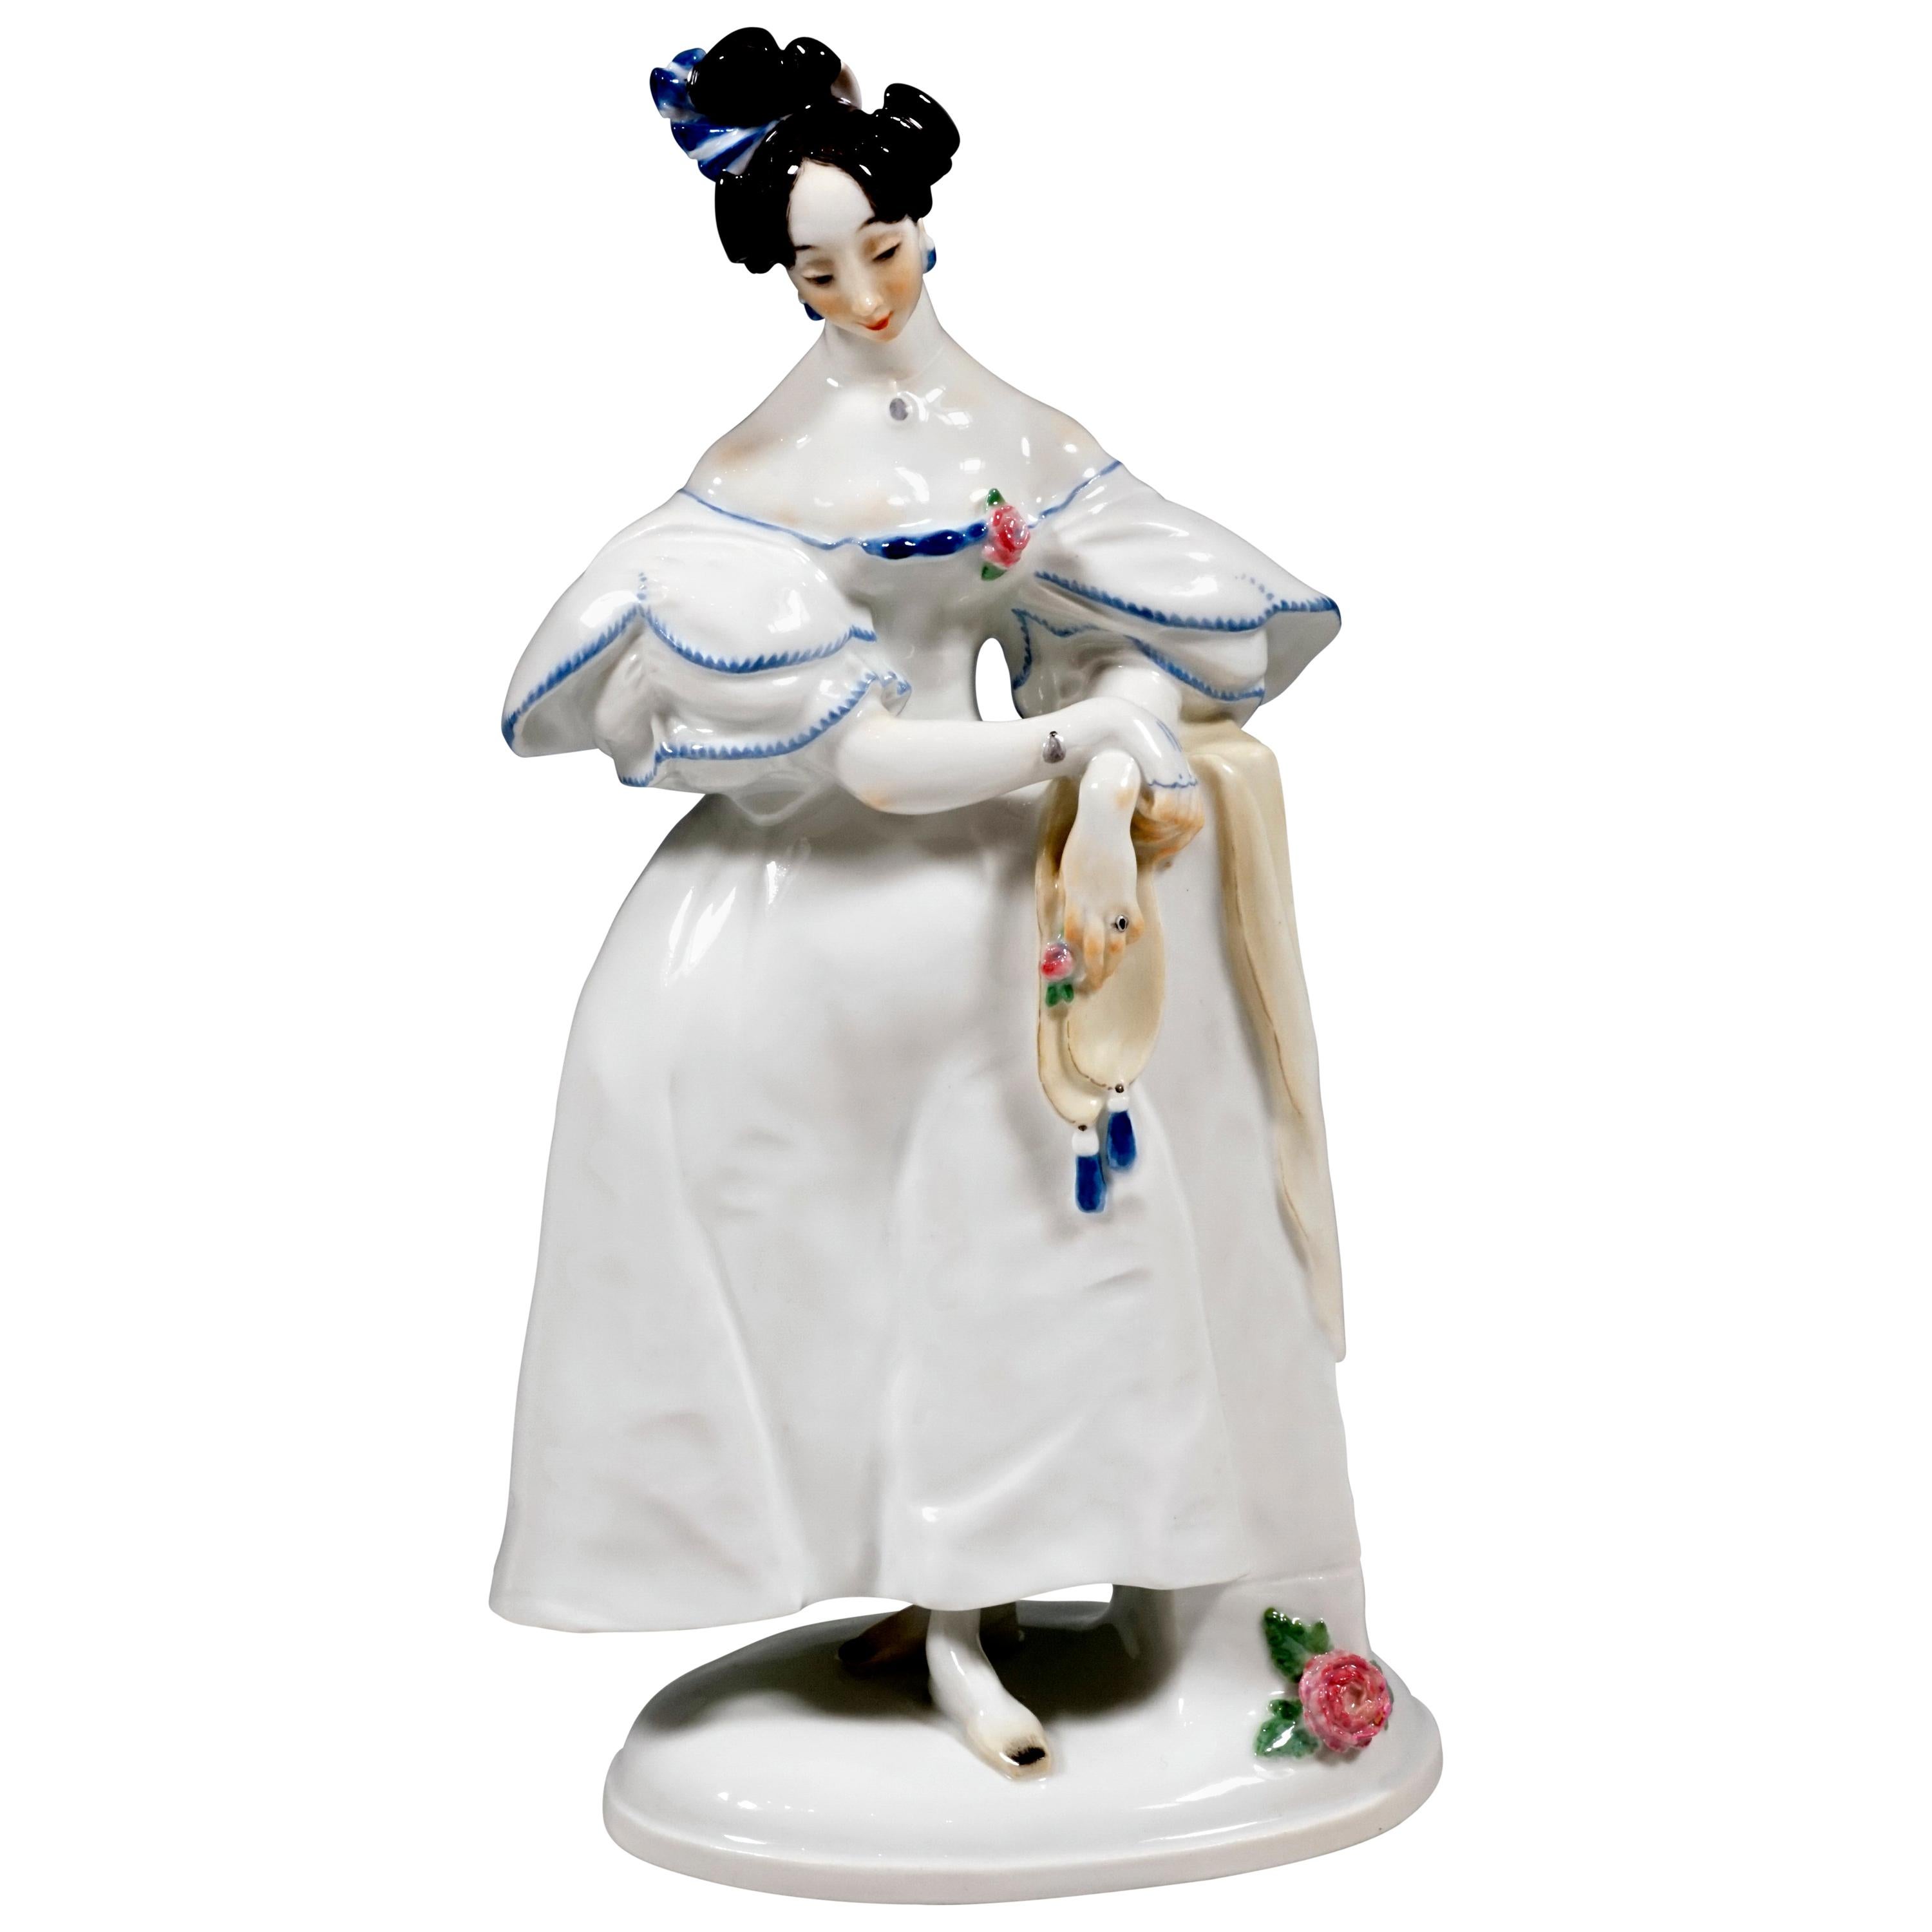 Meissen Porcelain Figure 'Biedermeier Lady' by Paul Scheurich, 1924-1934